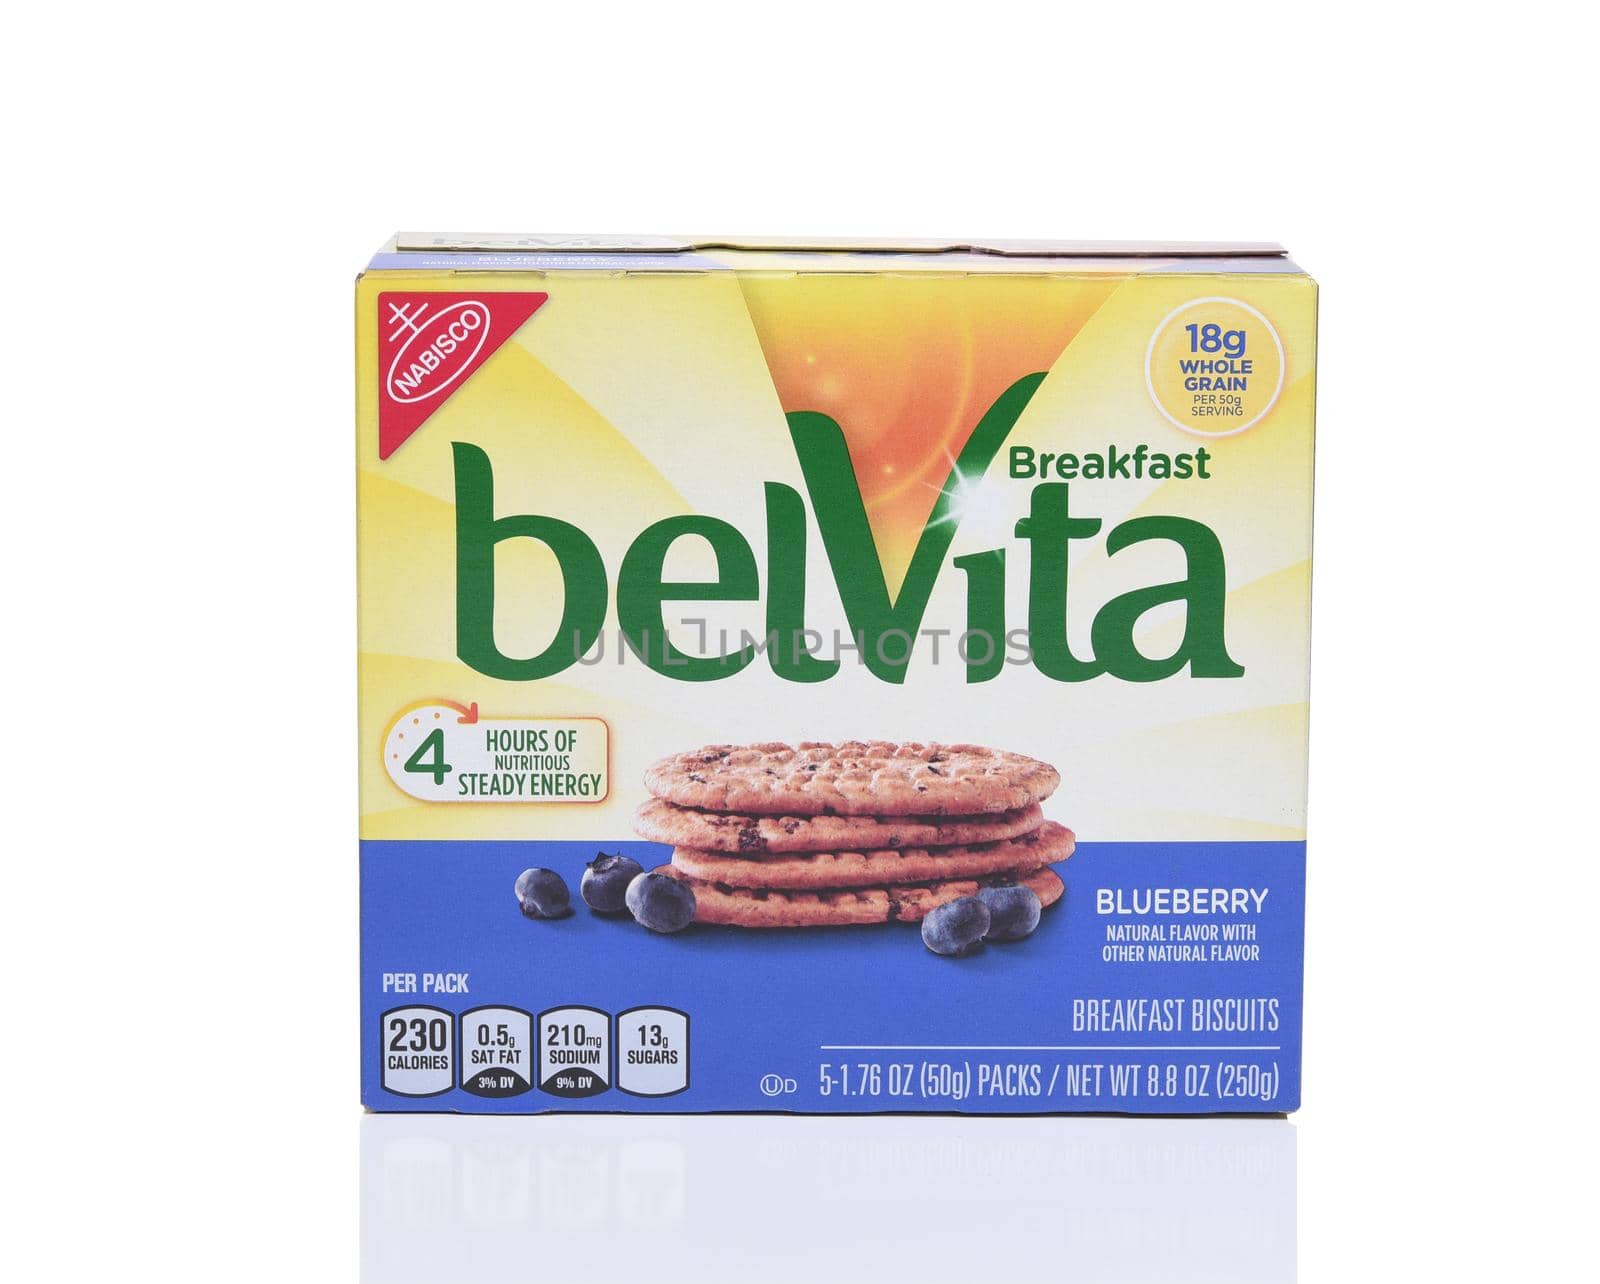 BelVita Blueberry Breakfast Biscuits by sCukrov